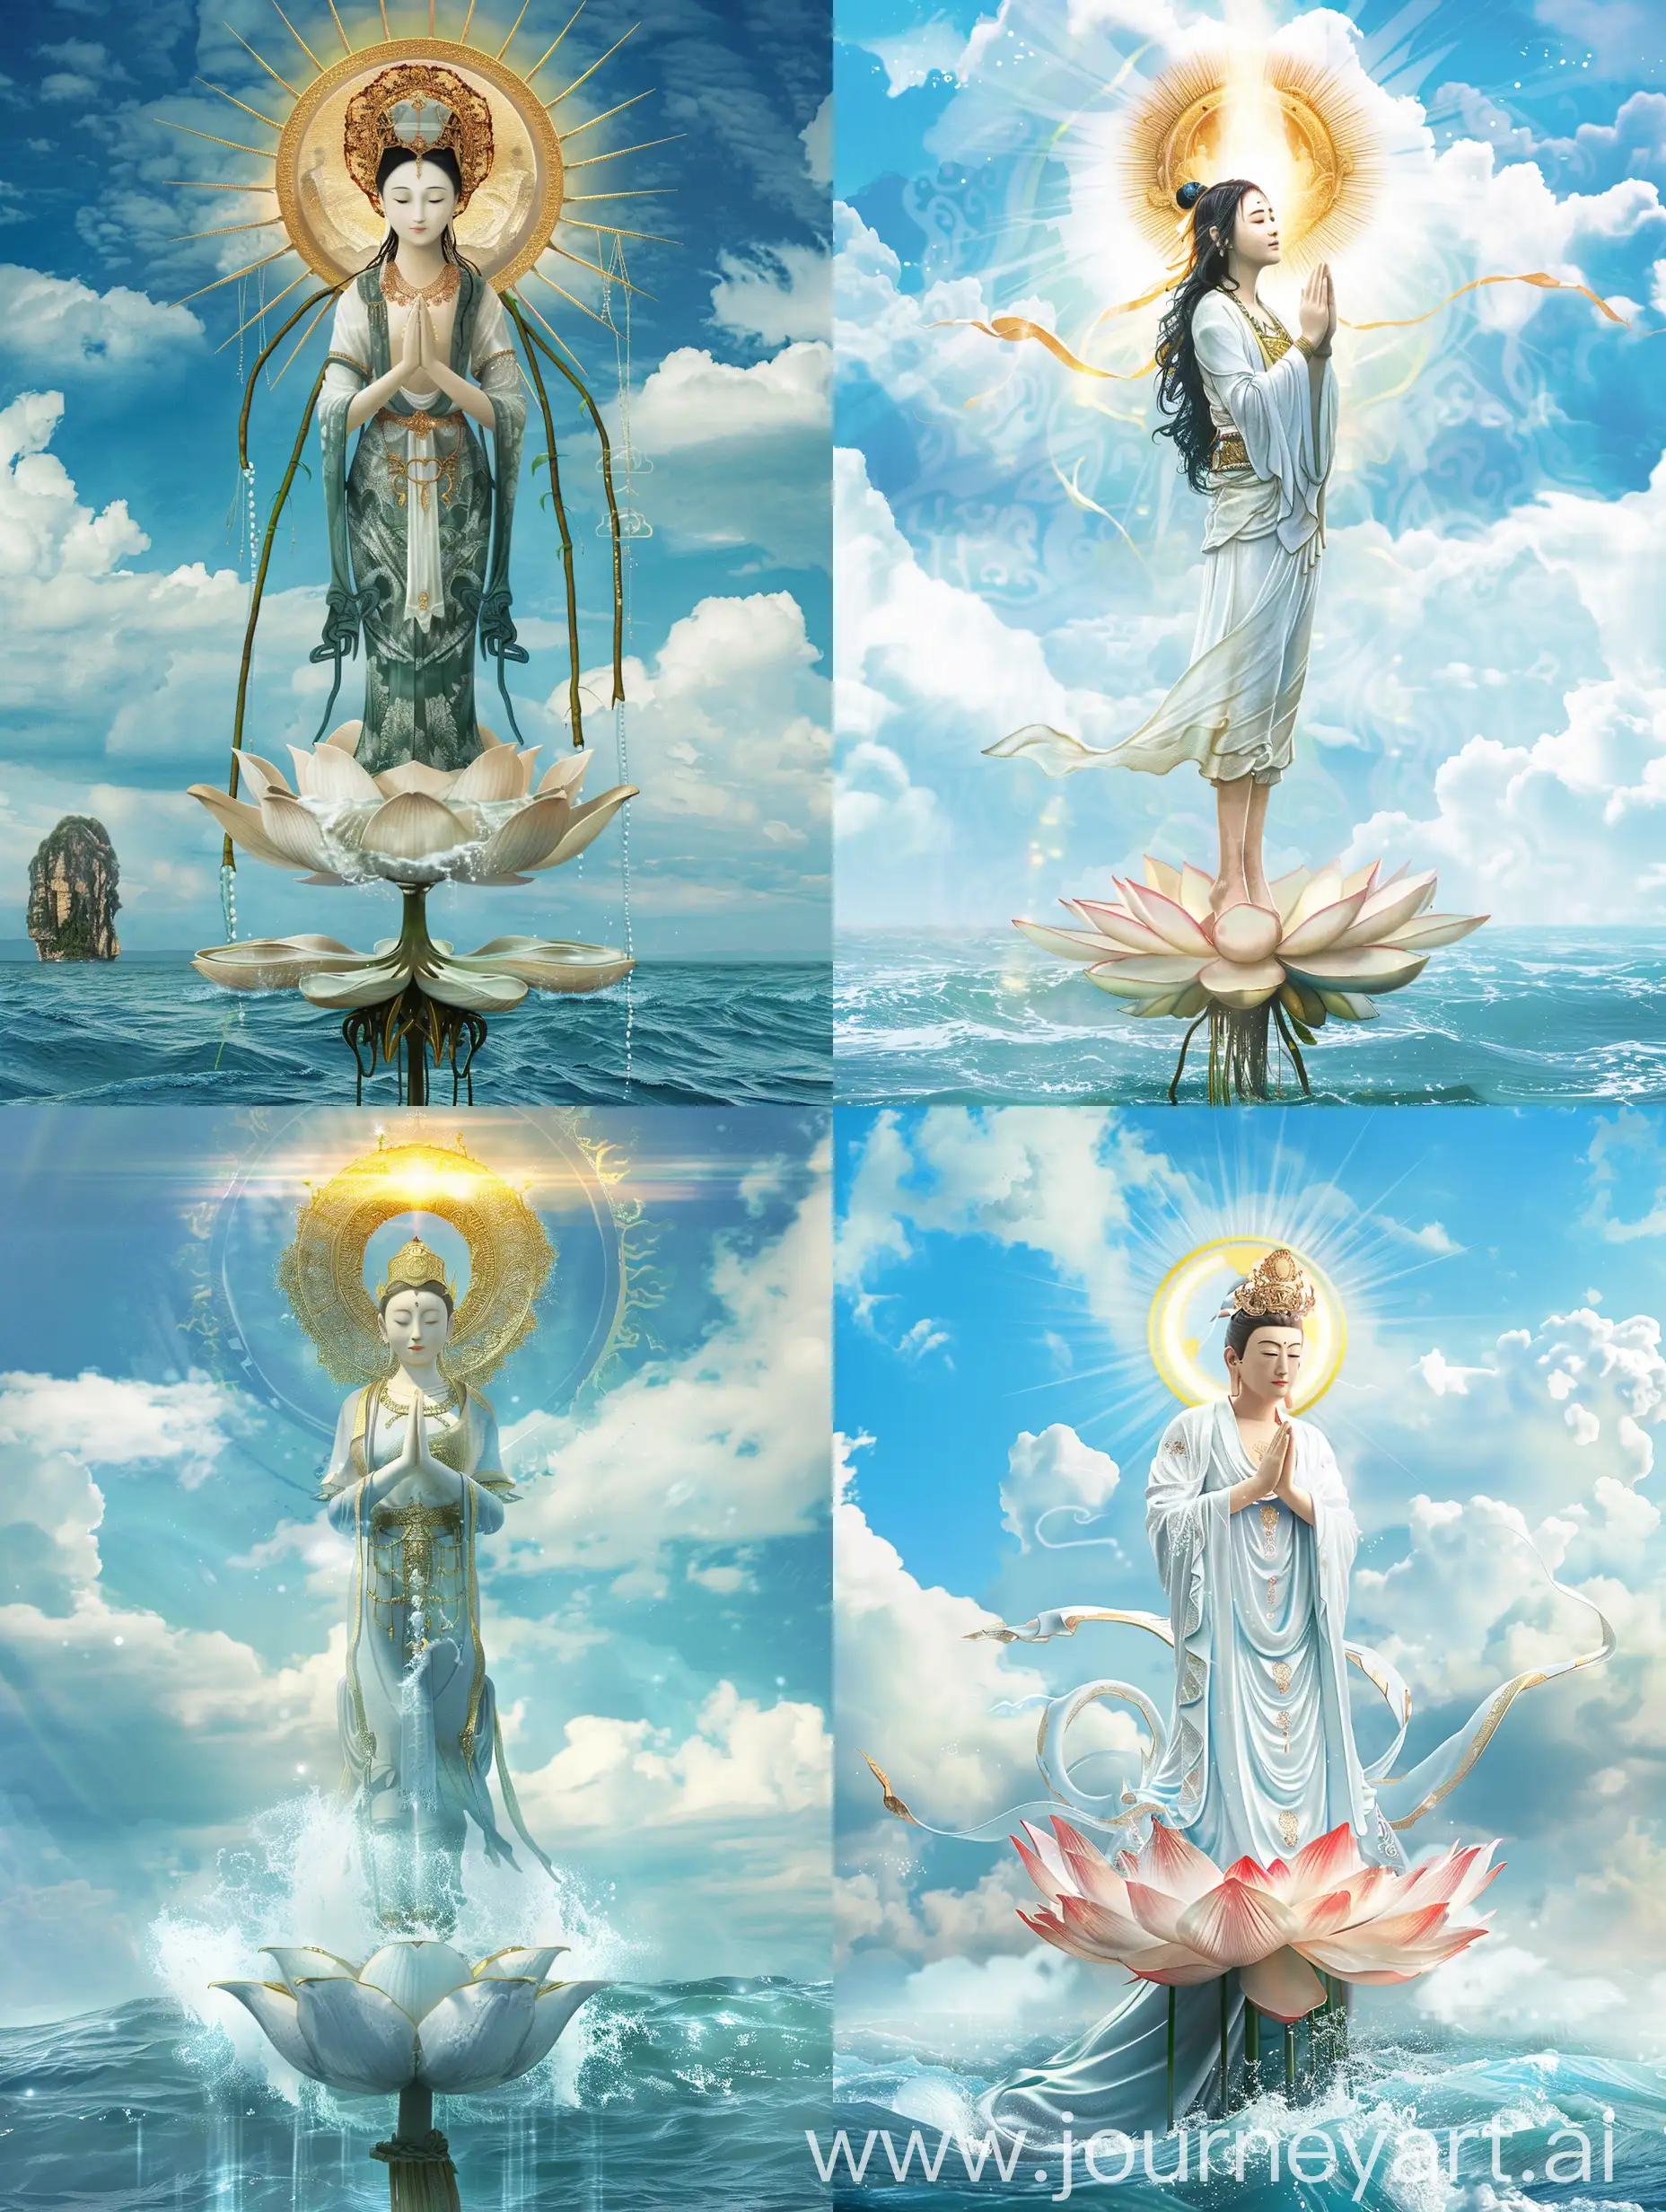 头后圆圈金色佛光的观世音菩萨，站在附在海面的莲花上，双手合十，背后蓝天白云，